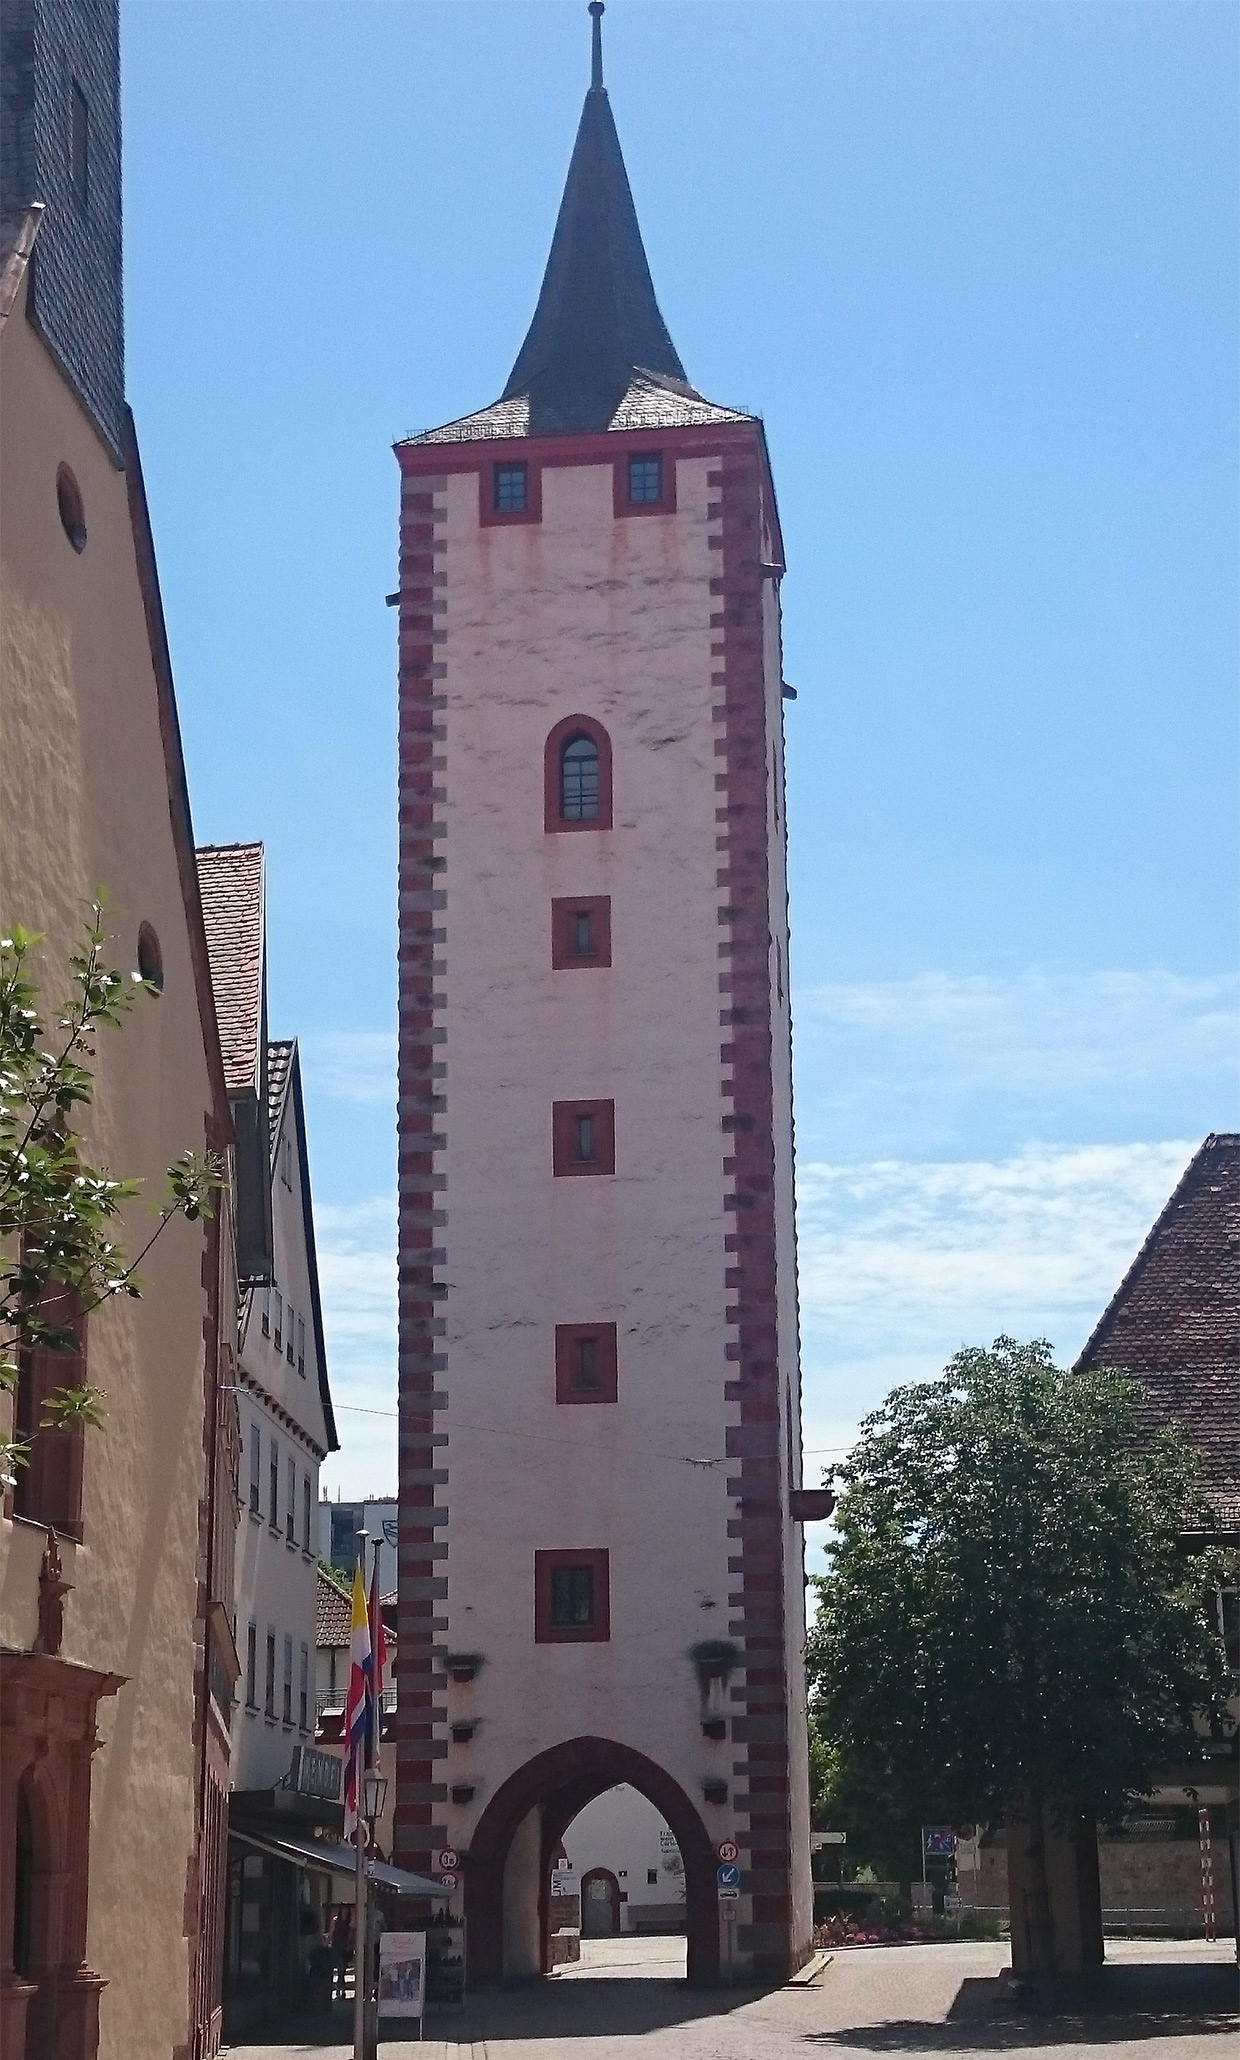 Oberer Torturm "Katzenturm"